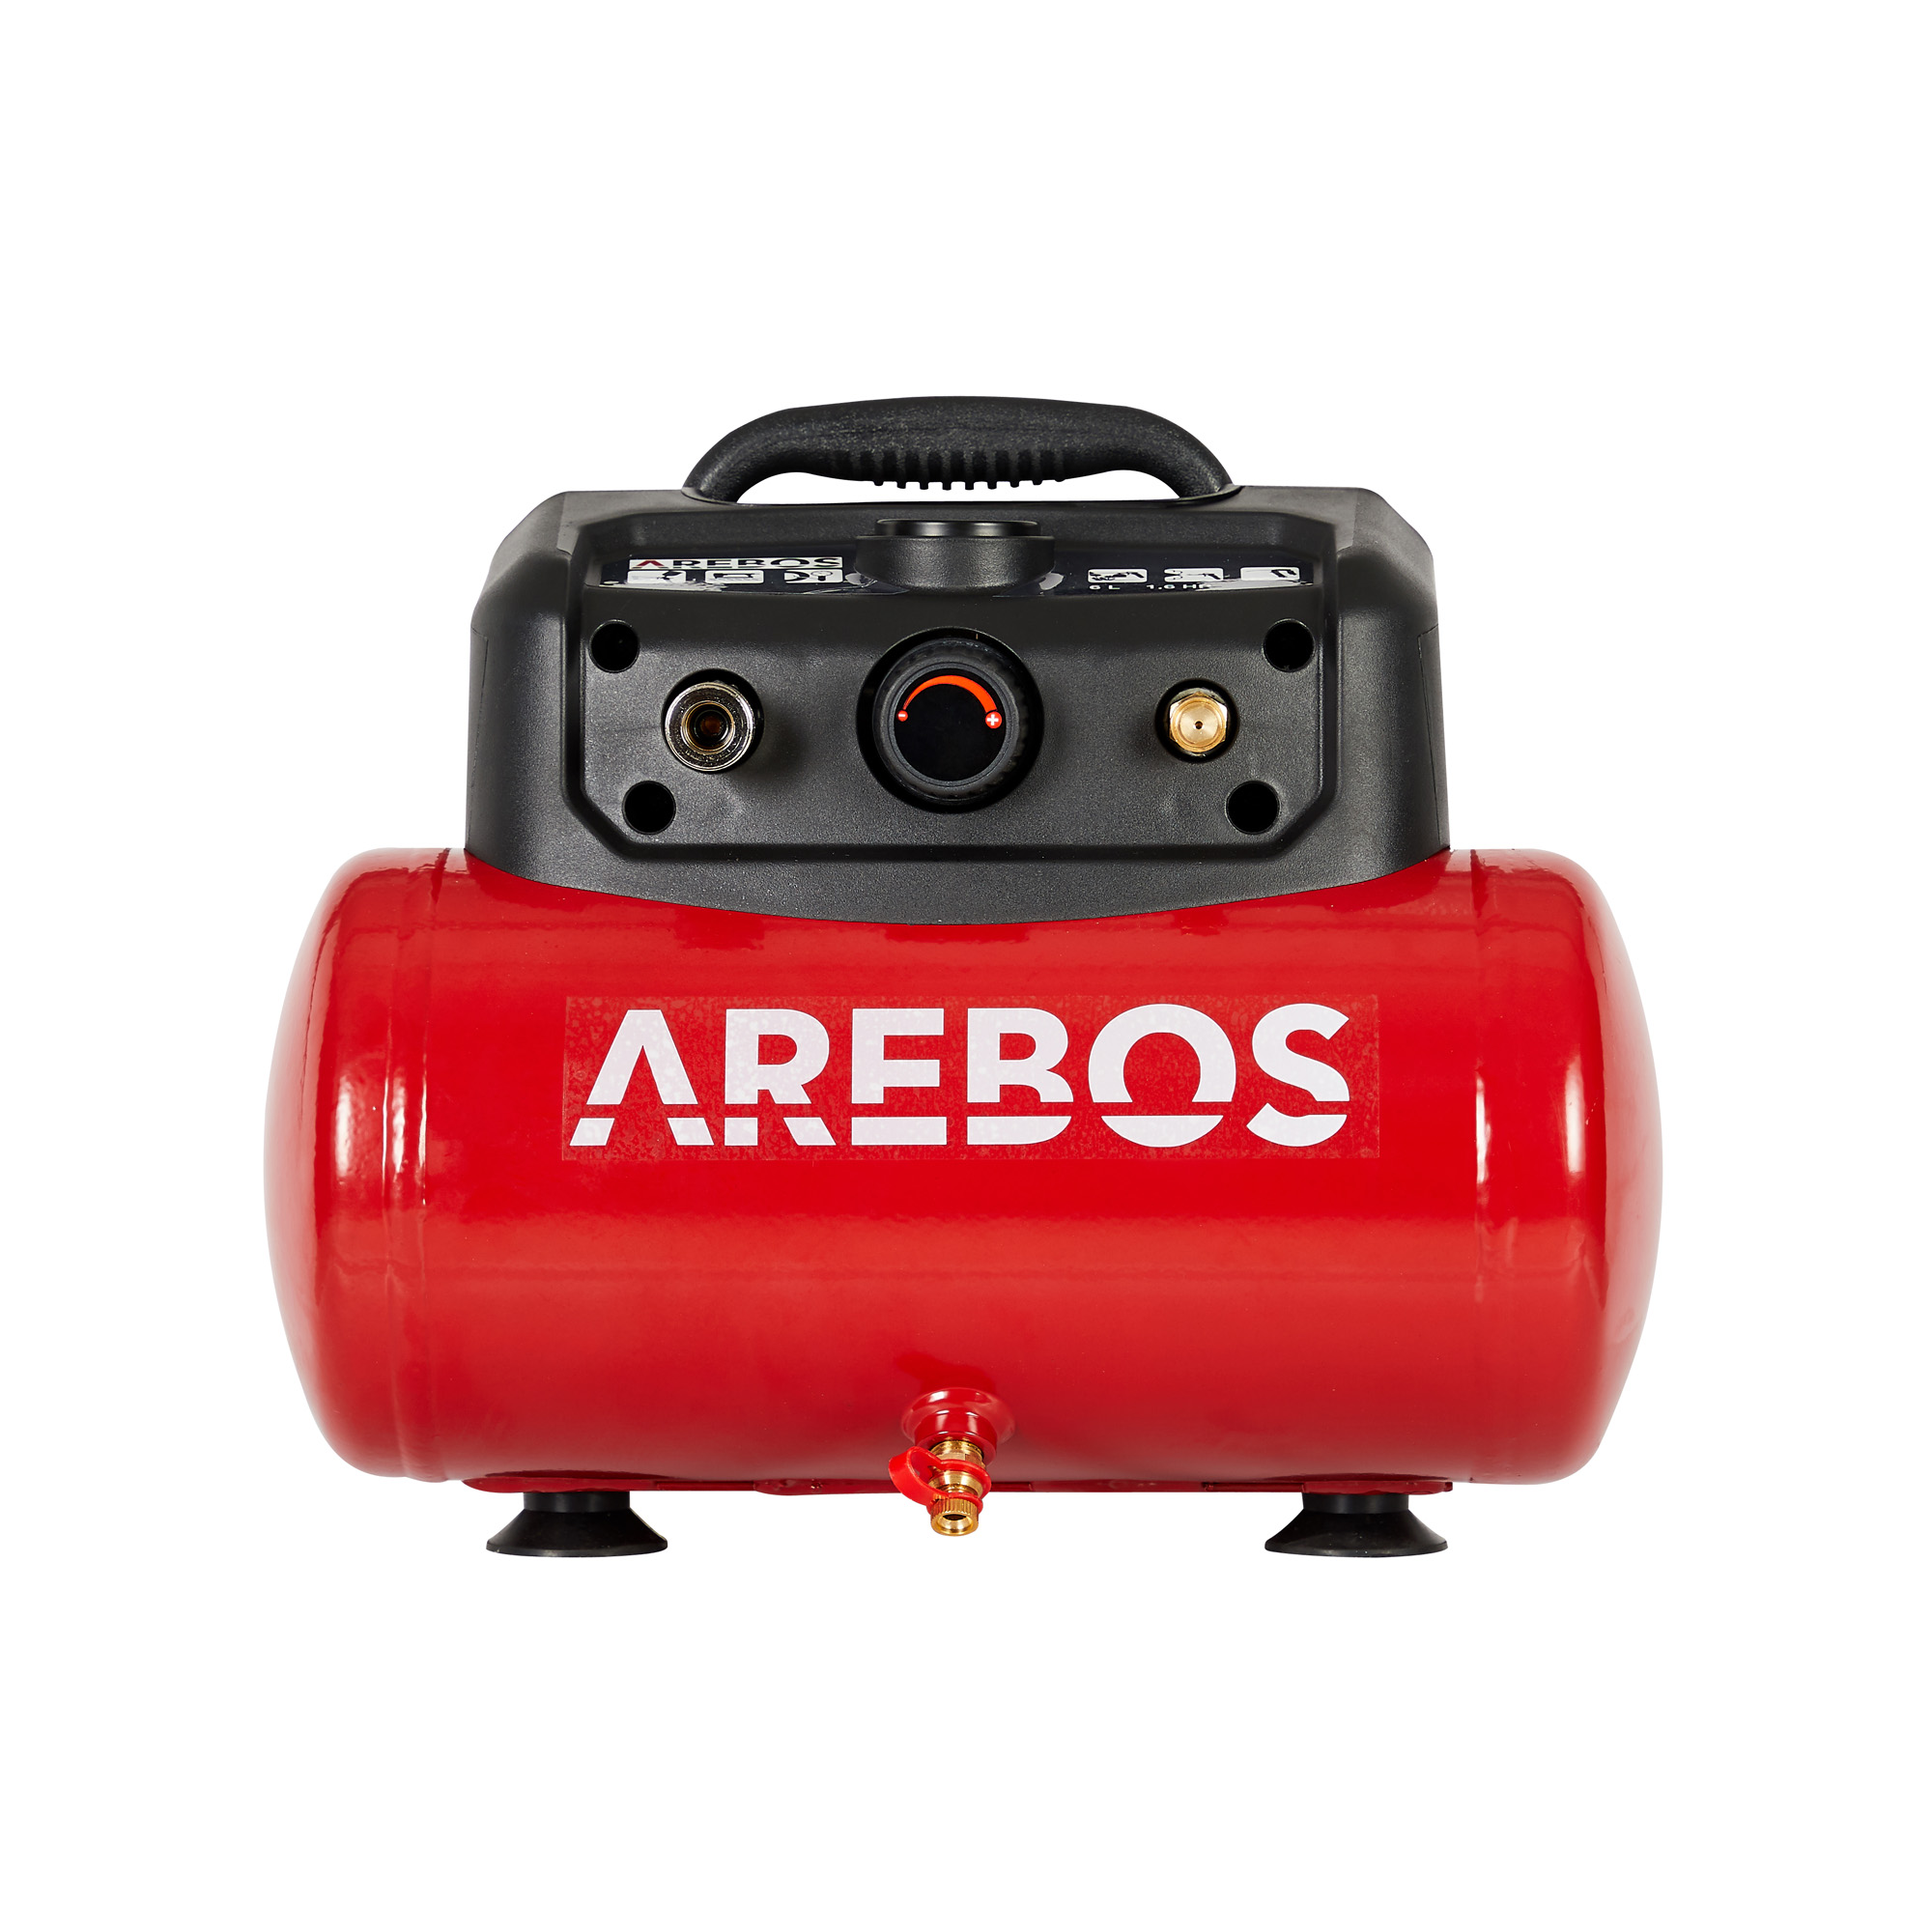 | Luftschlauch | Extra langer Rot 13-tlg. AREBOS Abschaltautomatik Druckluft-Werkzeug-Set Luftkompressor, | inkl. ölfrei